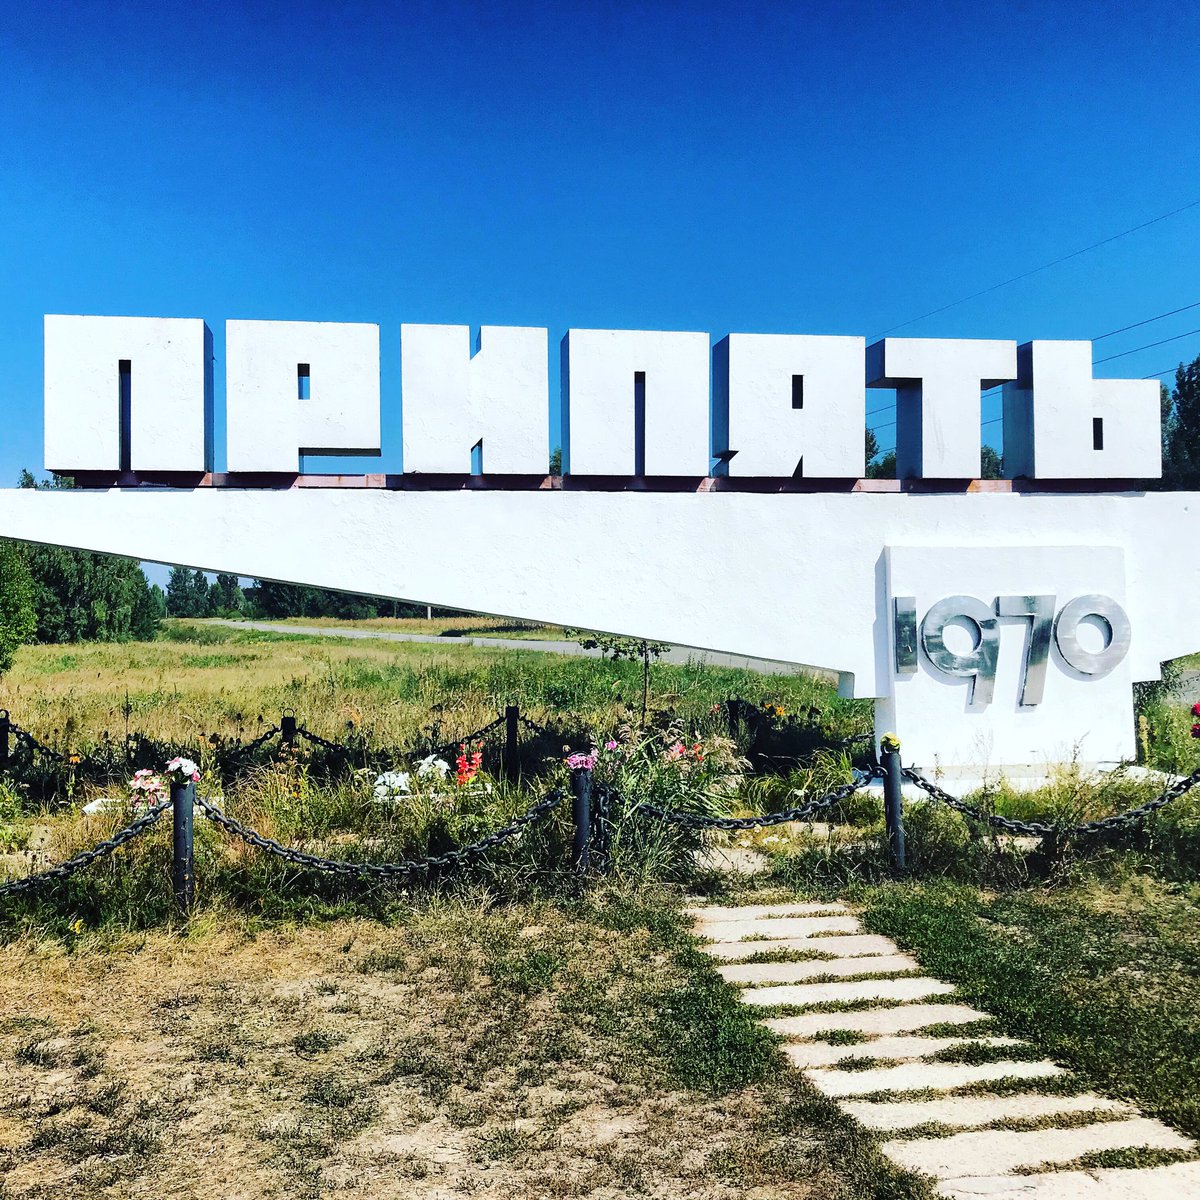 Nous poursuivons enfin notre chemin pour arriver devant le panneau d’entrée de Prypiat, cité inaugurée en 1970. C’est une ville réservé à l’élite soviétique : chercheurs, scientifiques, universitaires.  #Tchernobyl  (Plus de photos:  http://Instagram.com/nashtagstagram )